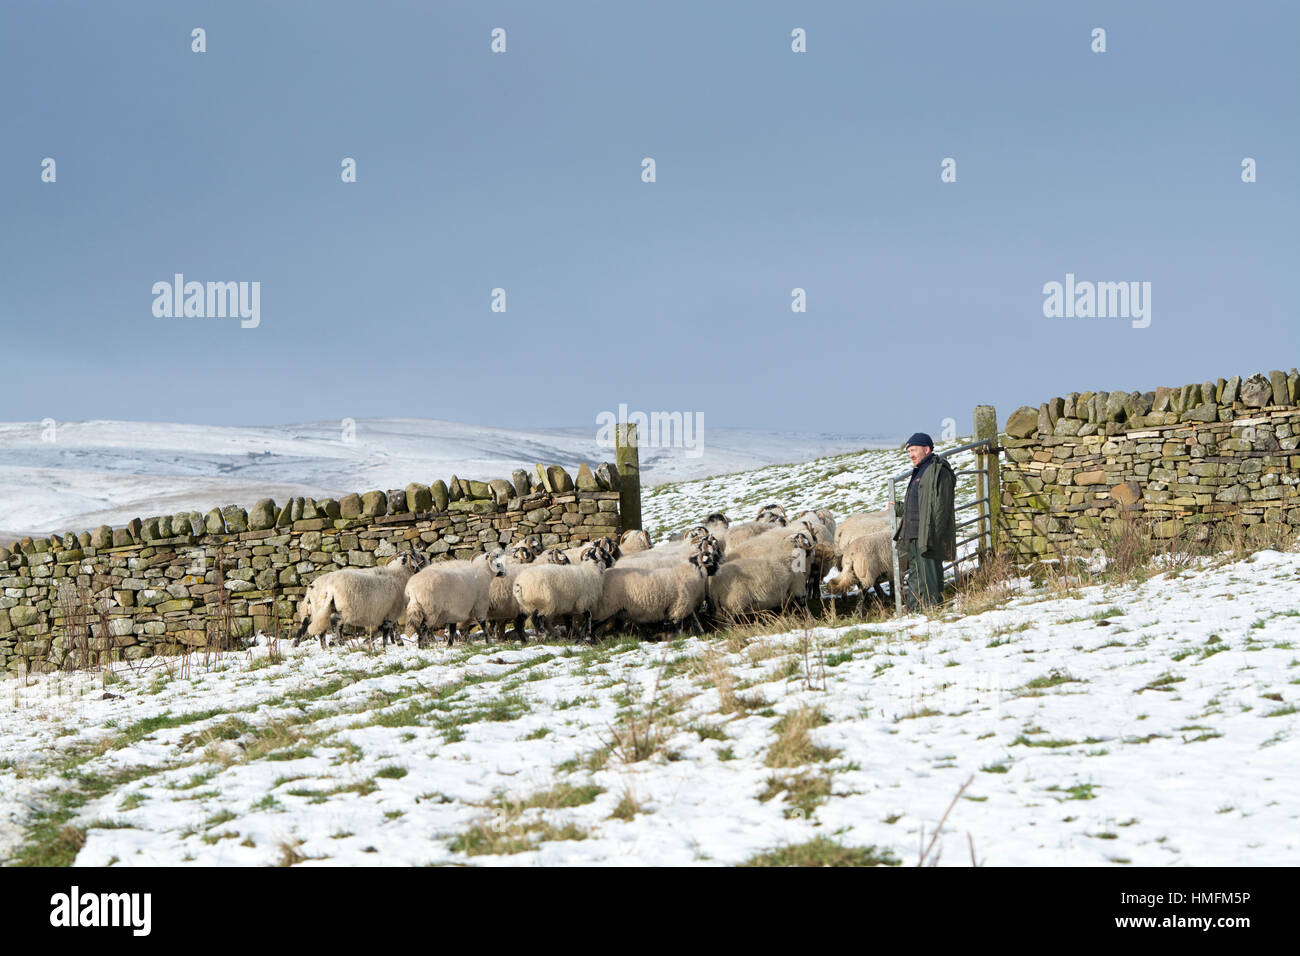 Pastor tomaron ovejas a través de una puerta, moviéndolos con un ovejero en la nieve, Upper Teesdale, Reino Unido. Foto de stock